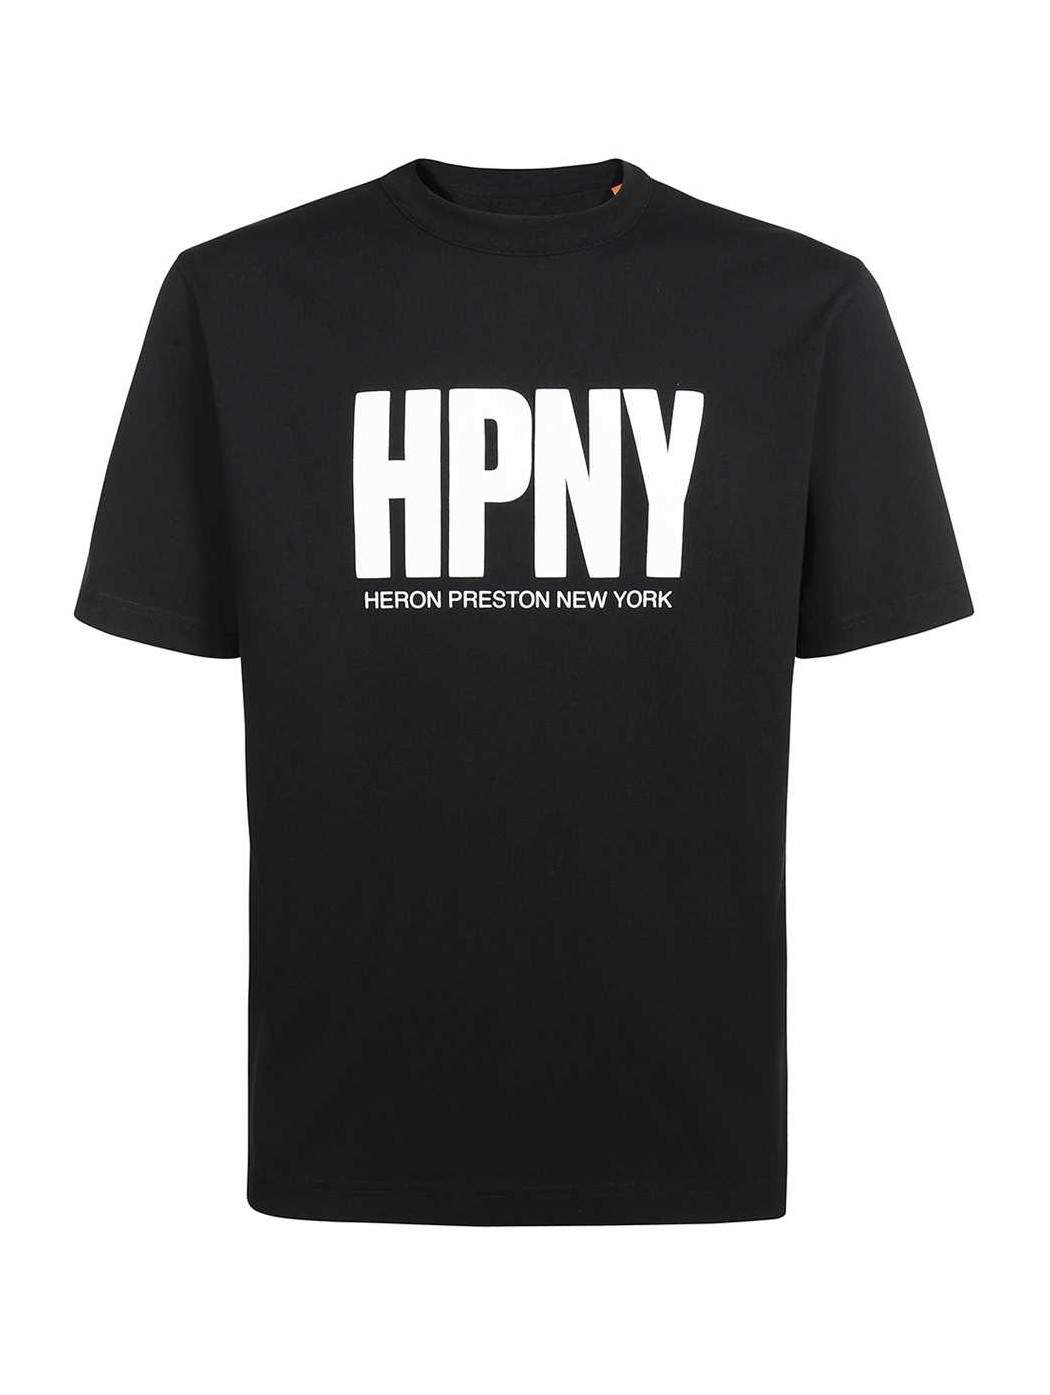 HPNY HERON PRESTON NEW YORK...